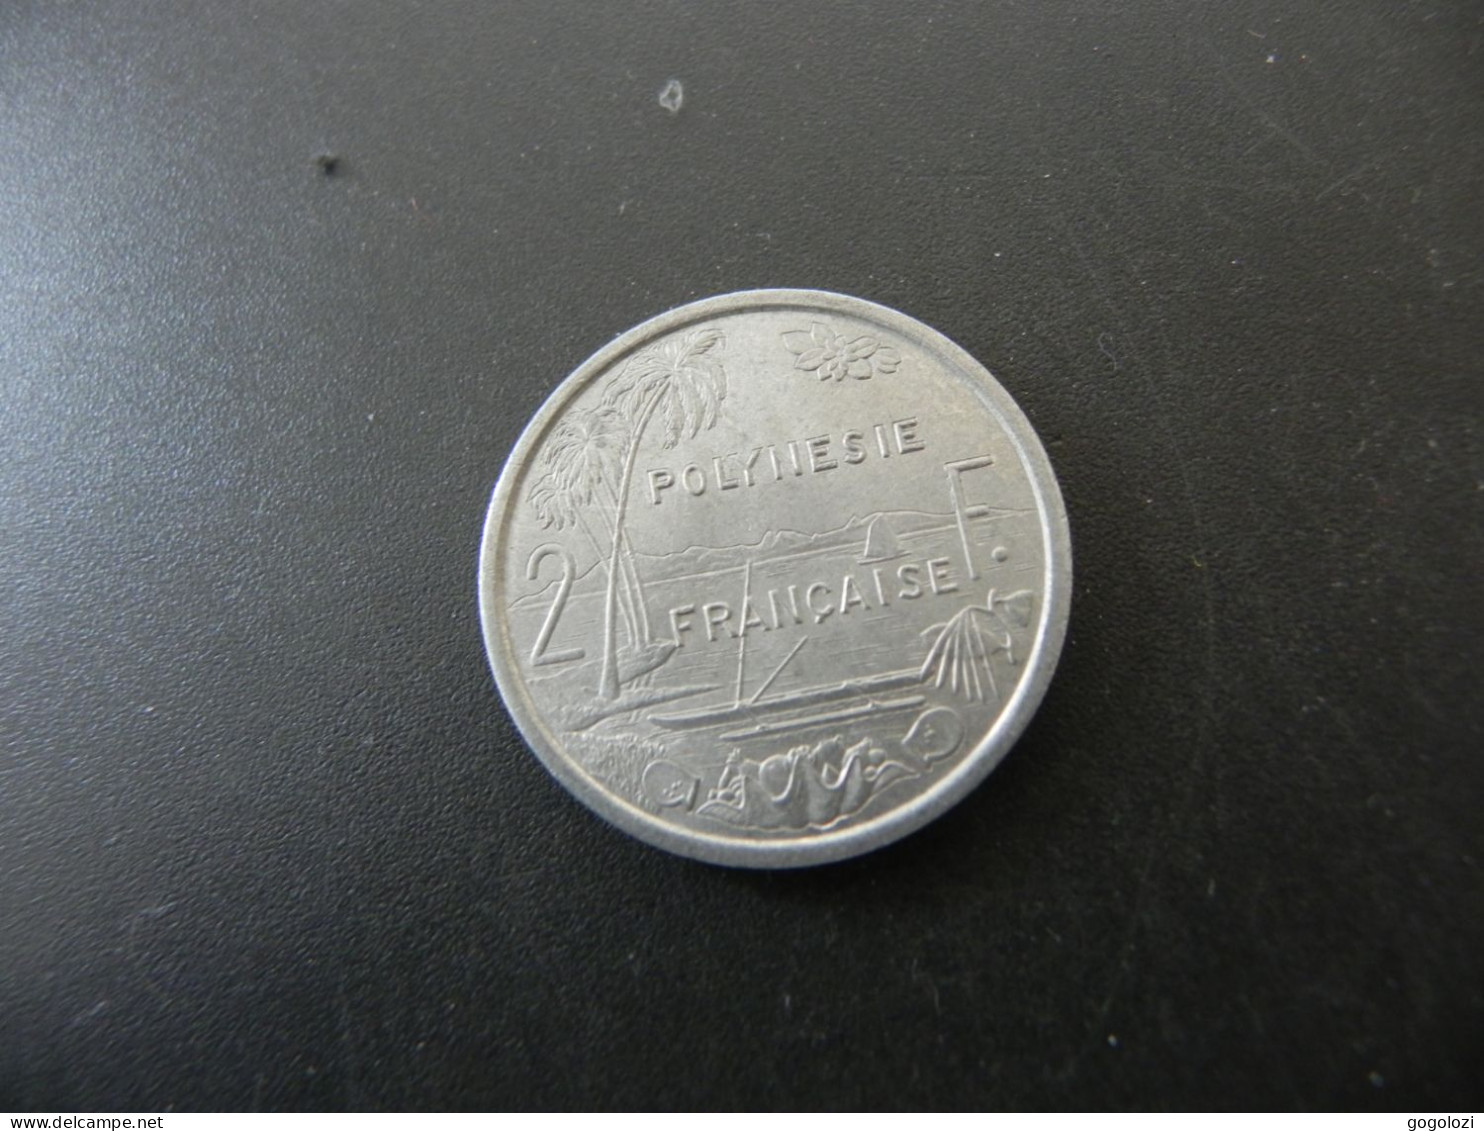 Polynesie Française 2 Francs 1975 - French Polynesia